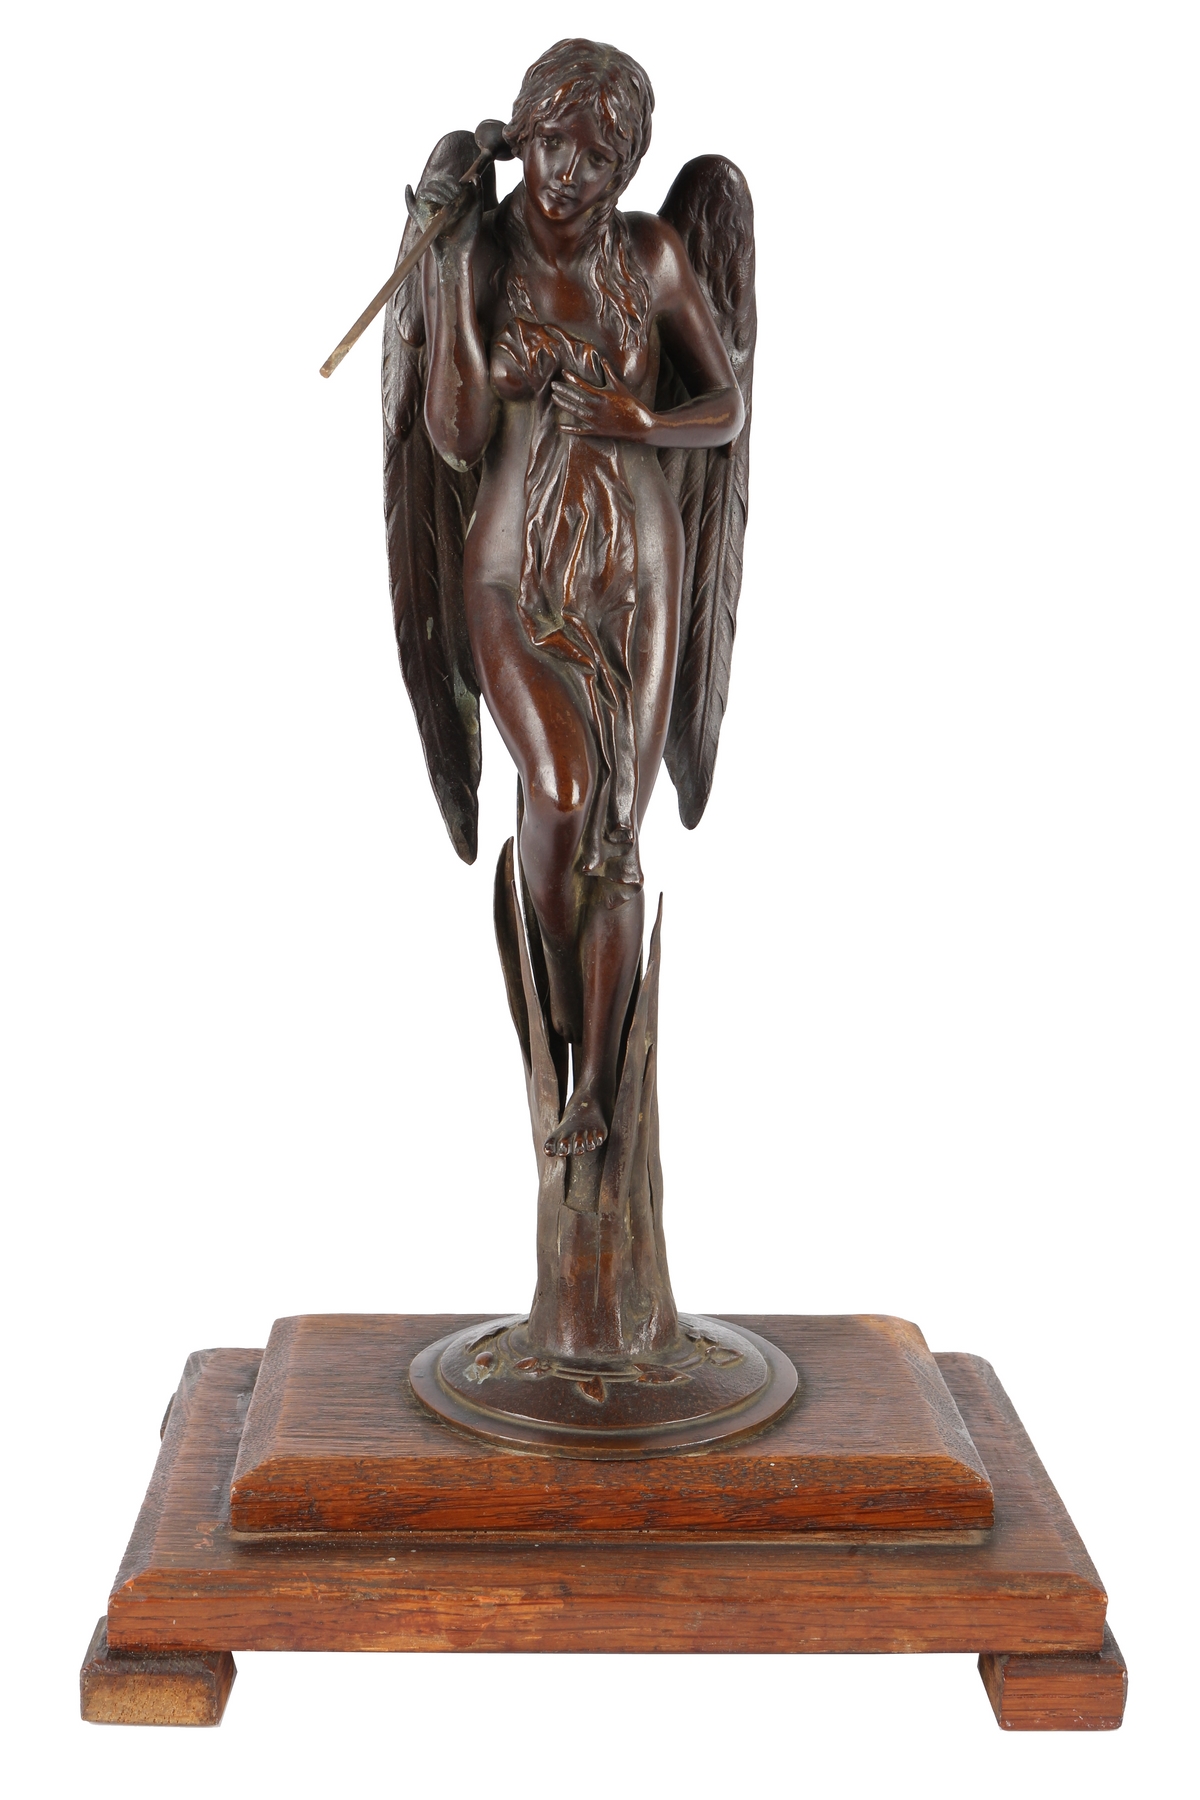 Bronze Engel mit Fanfare um 1900, bronce angel with trumpet around 1900,